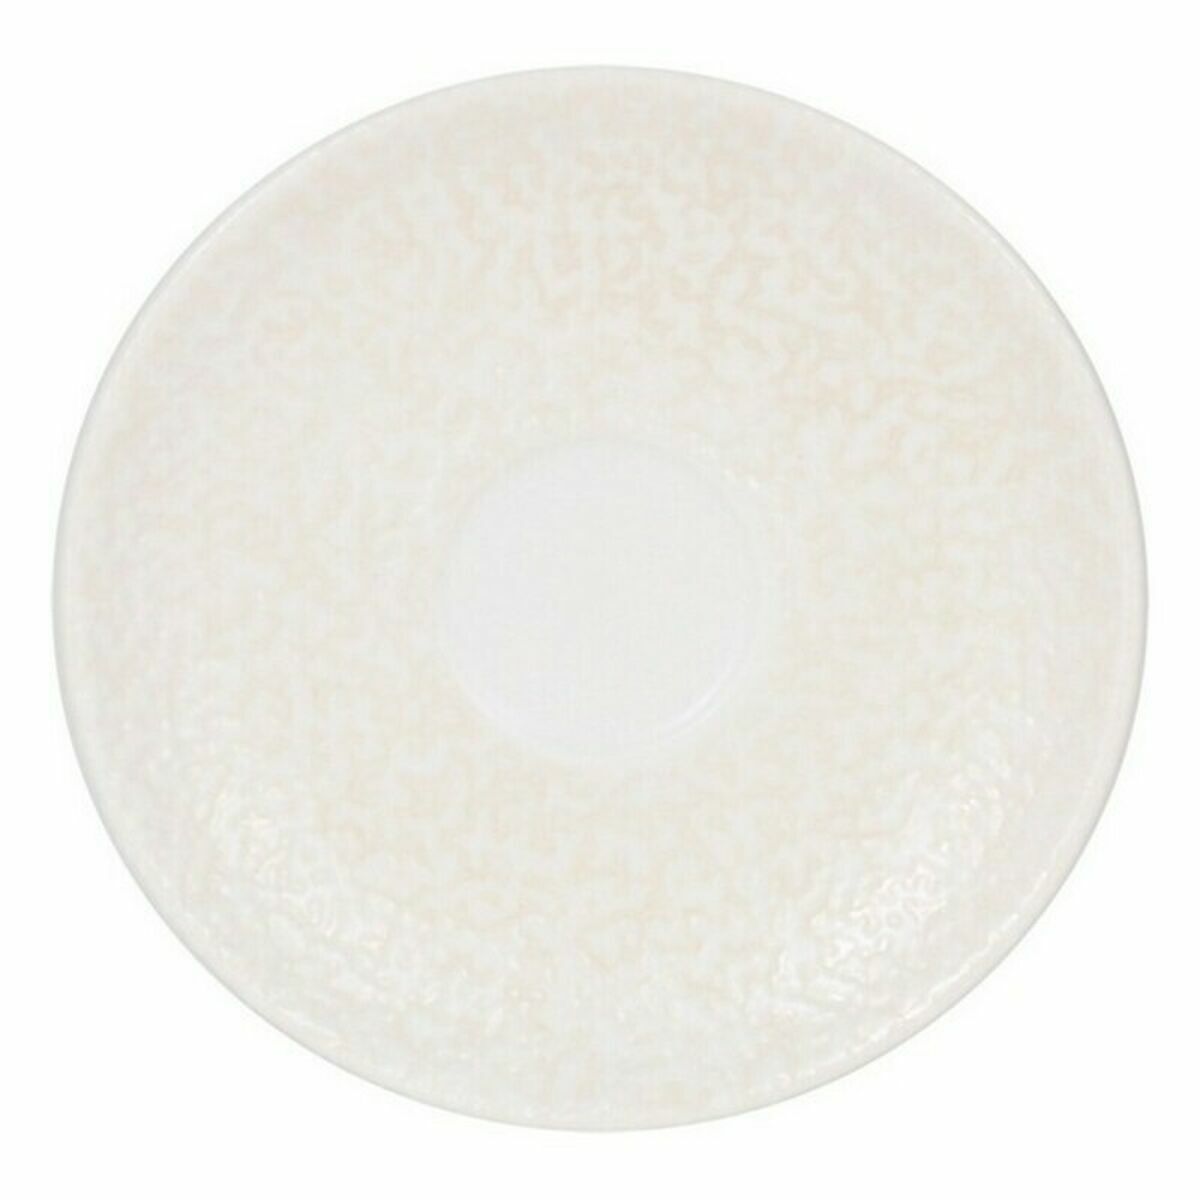 Plate Inde Atelier Porcelain White Ø 12 cm (6 Units) (ø 12 cm)